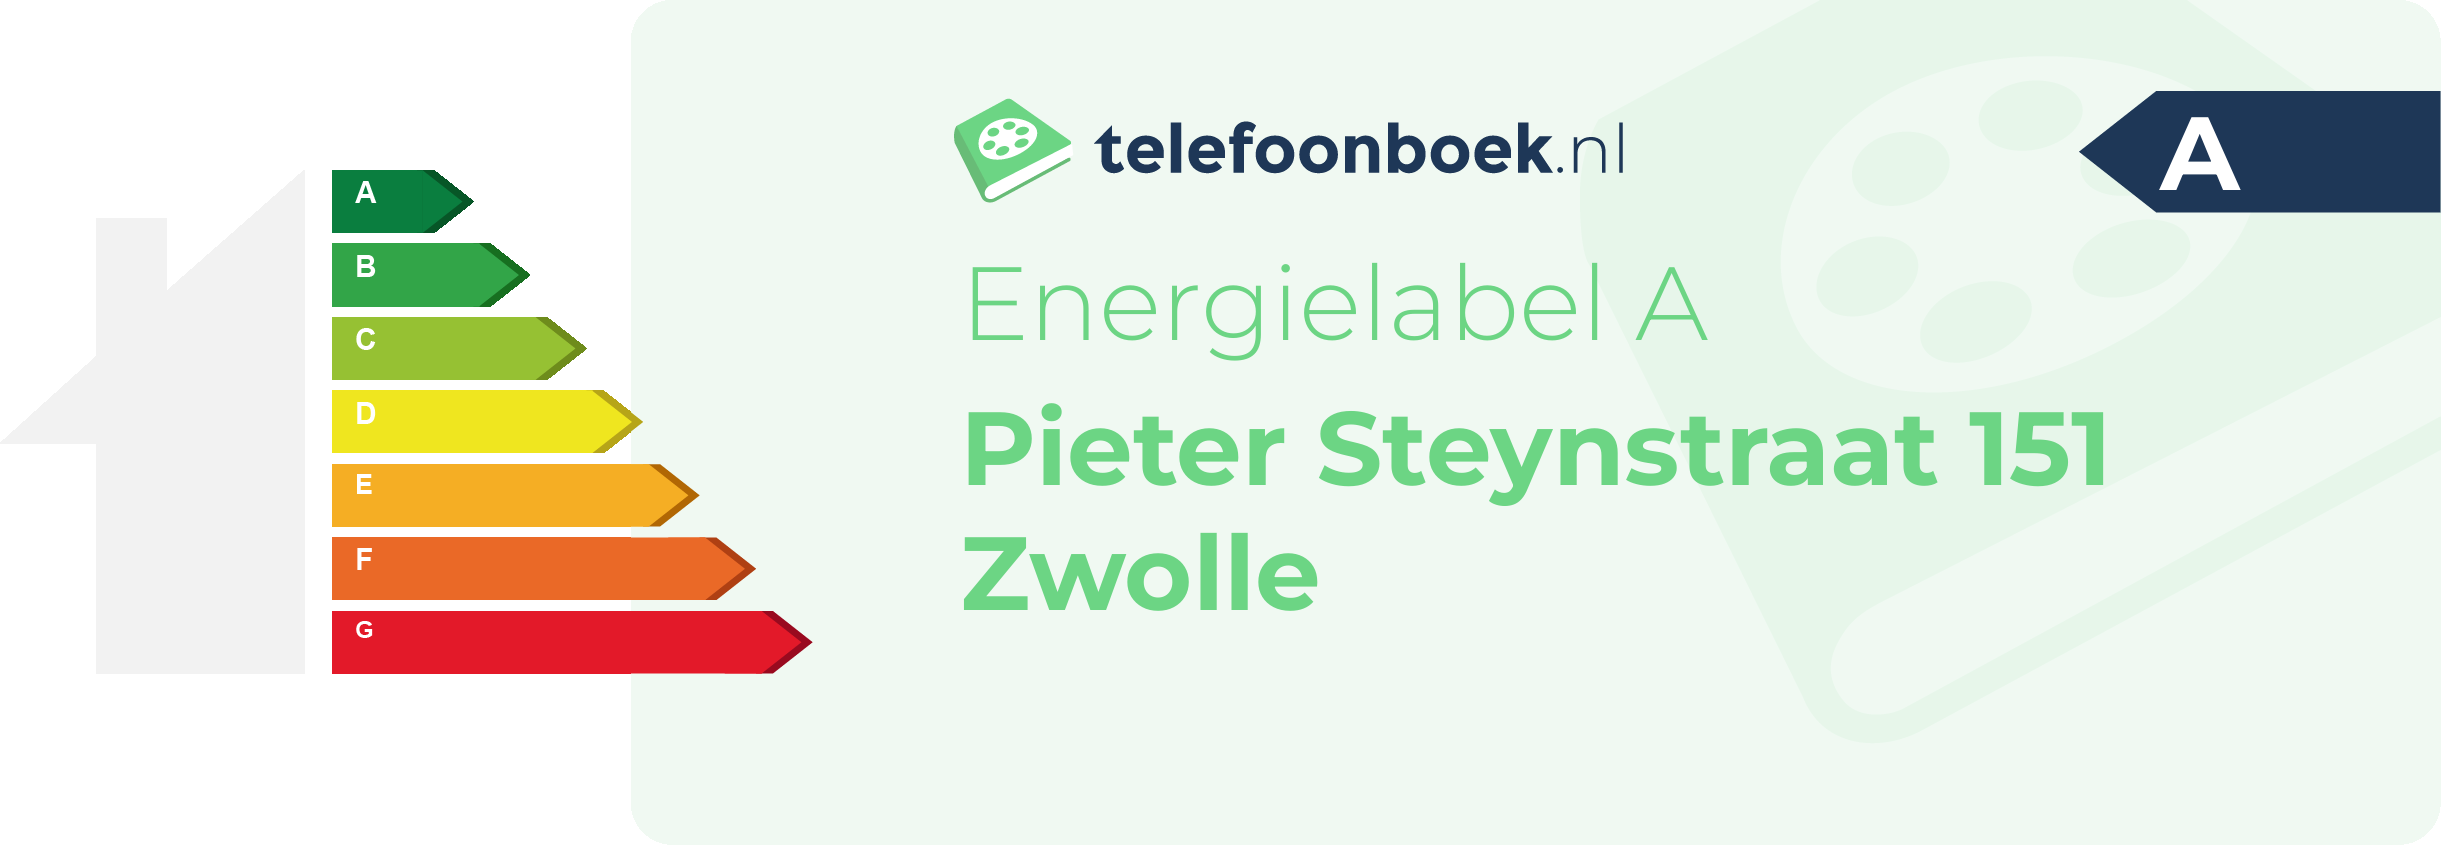 Energielabel Pieter Steynstraat 151 Zwolle